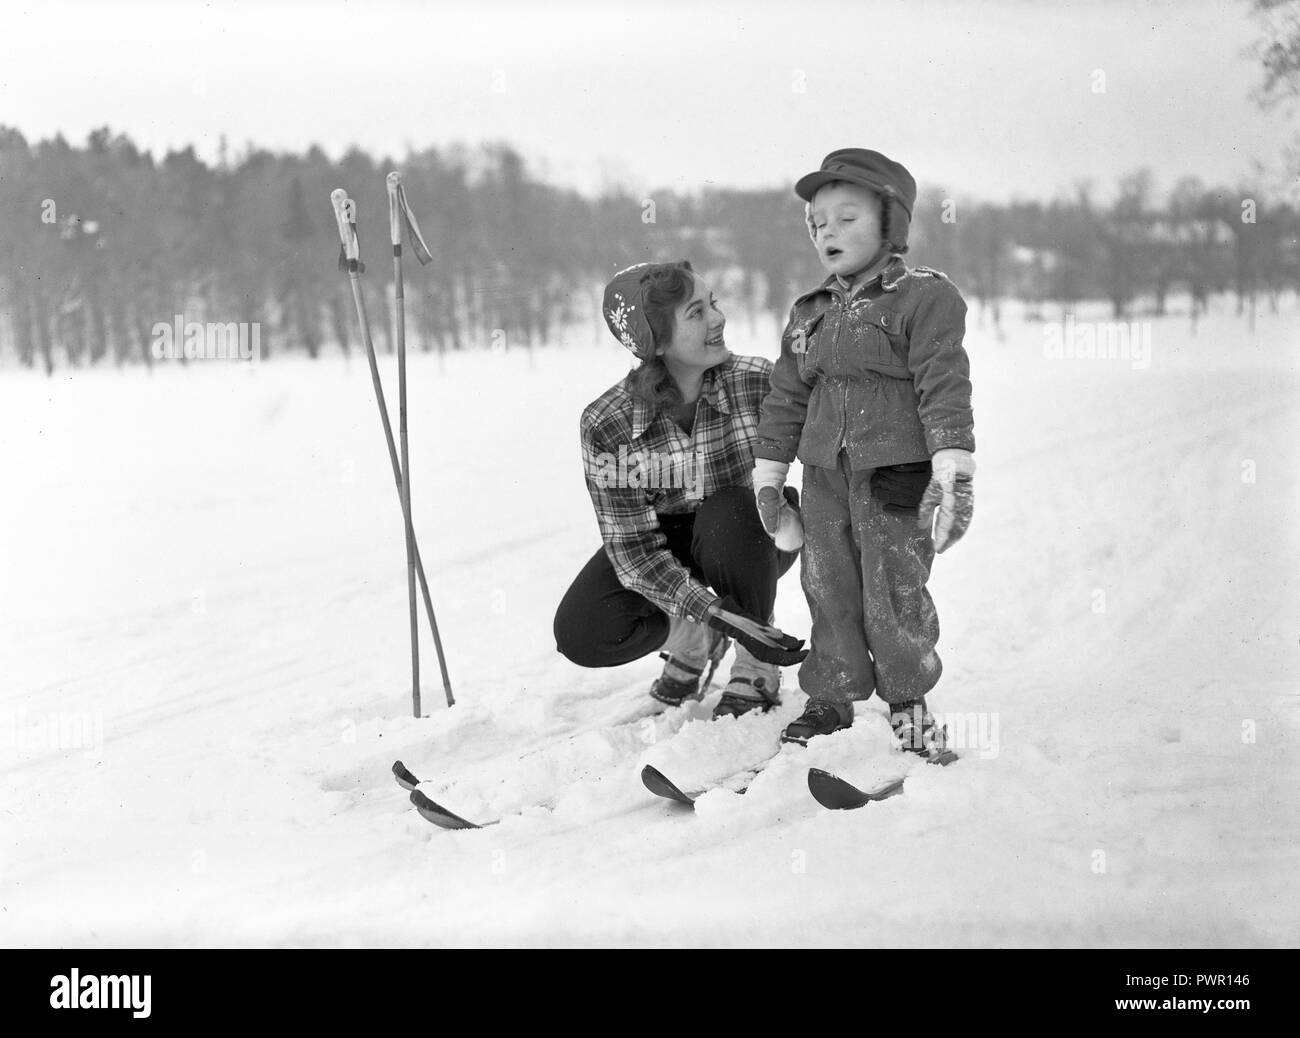 L'hiver dans les années 40. Abrite Également une actrice, 1925-1957 Torén, sur une journée d'hiver le ski avec son fils. La Suède des années 40. Kristoffersson Photo ref 198 A-3 Banque D'Images